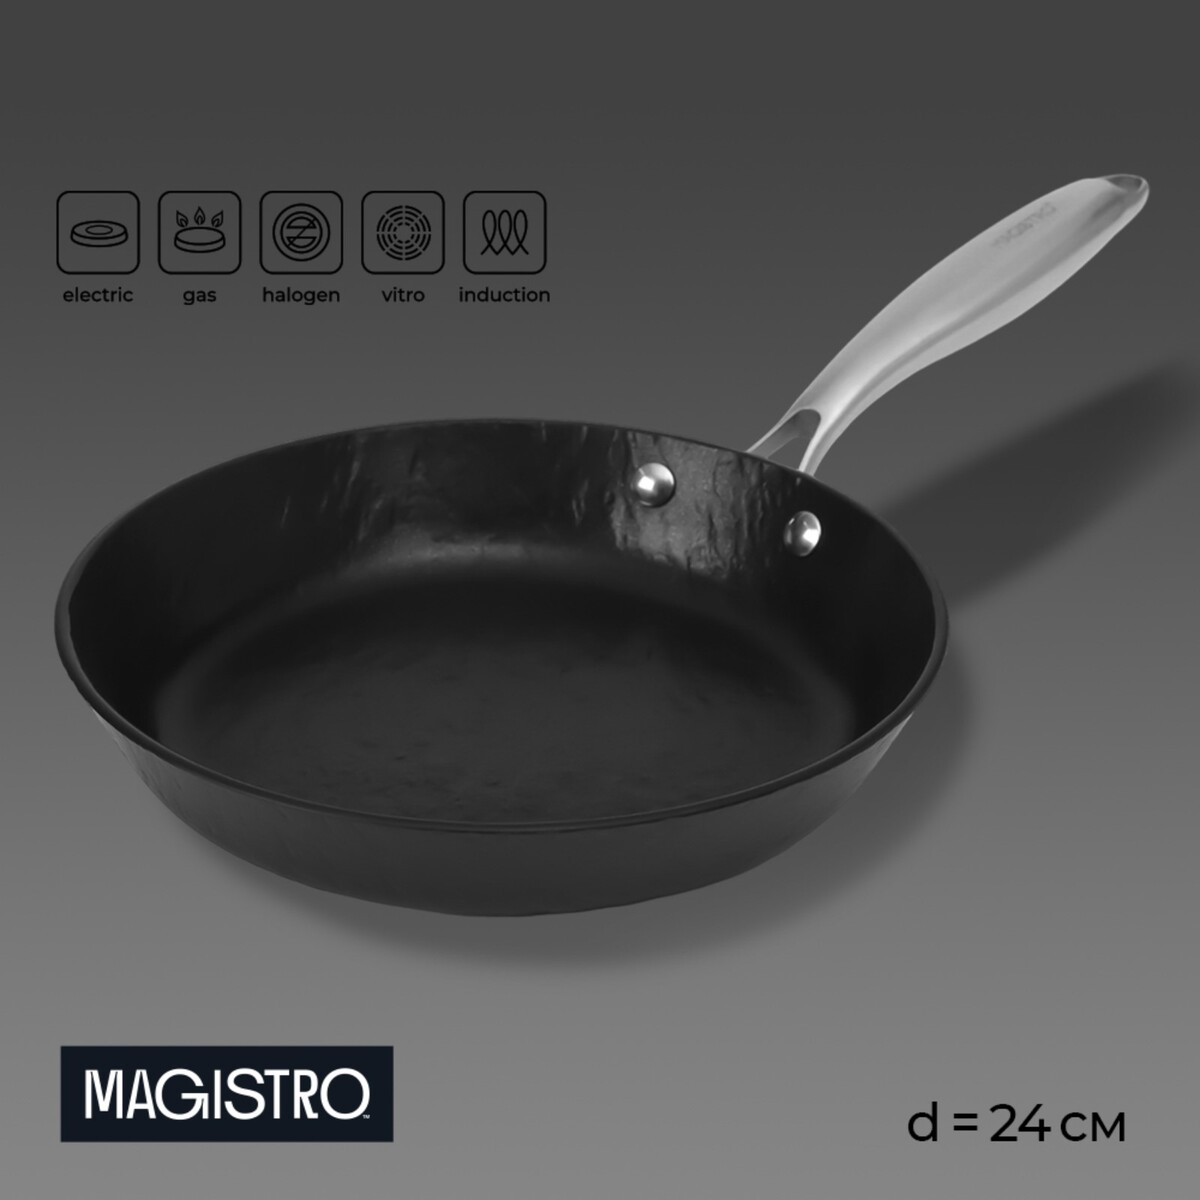 Сковорода magistro rock stone, d=24 см, h=4,5 см, антипригарное покрытие, индукция, цвет черный сковорода нержавеющая сталь 34 см антипригарное покрытие катунь общепит кт об са 34 индукция